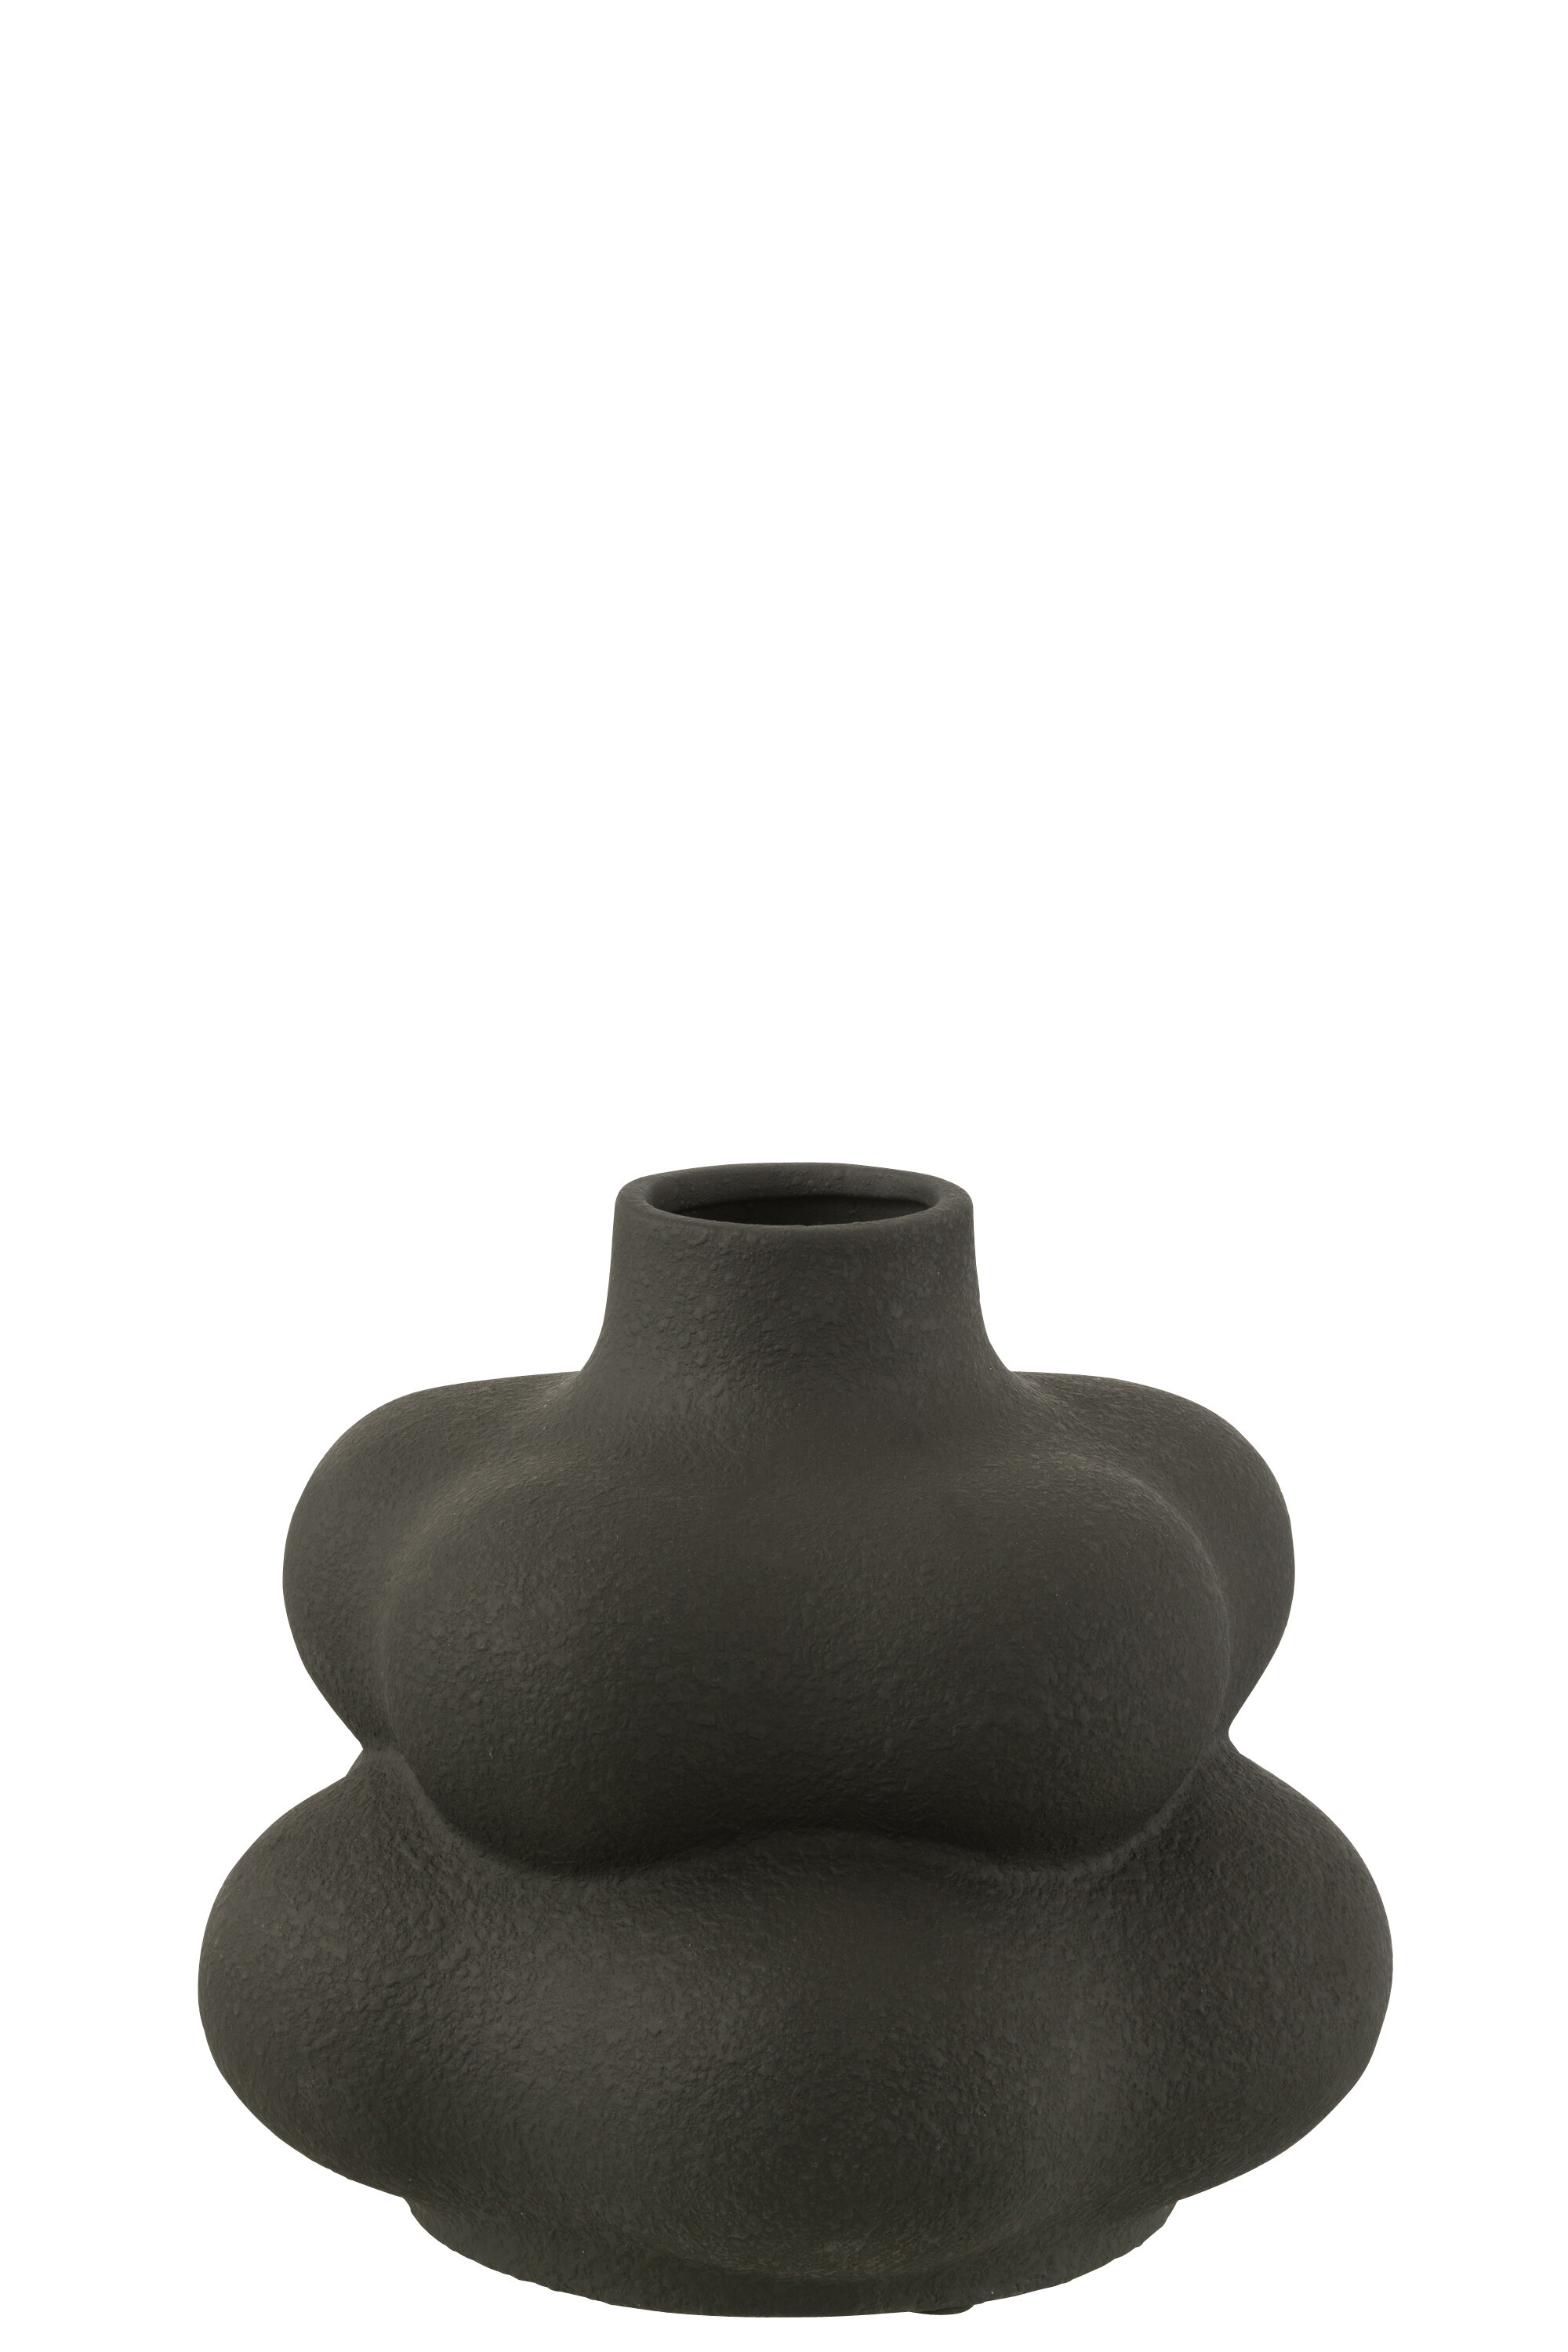 Vaza Lio Ceramica S